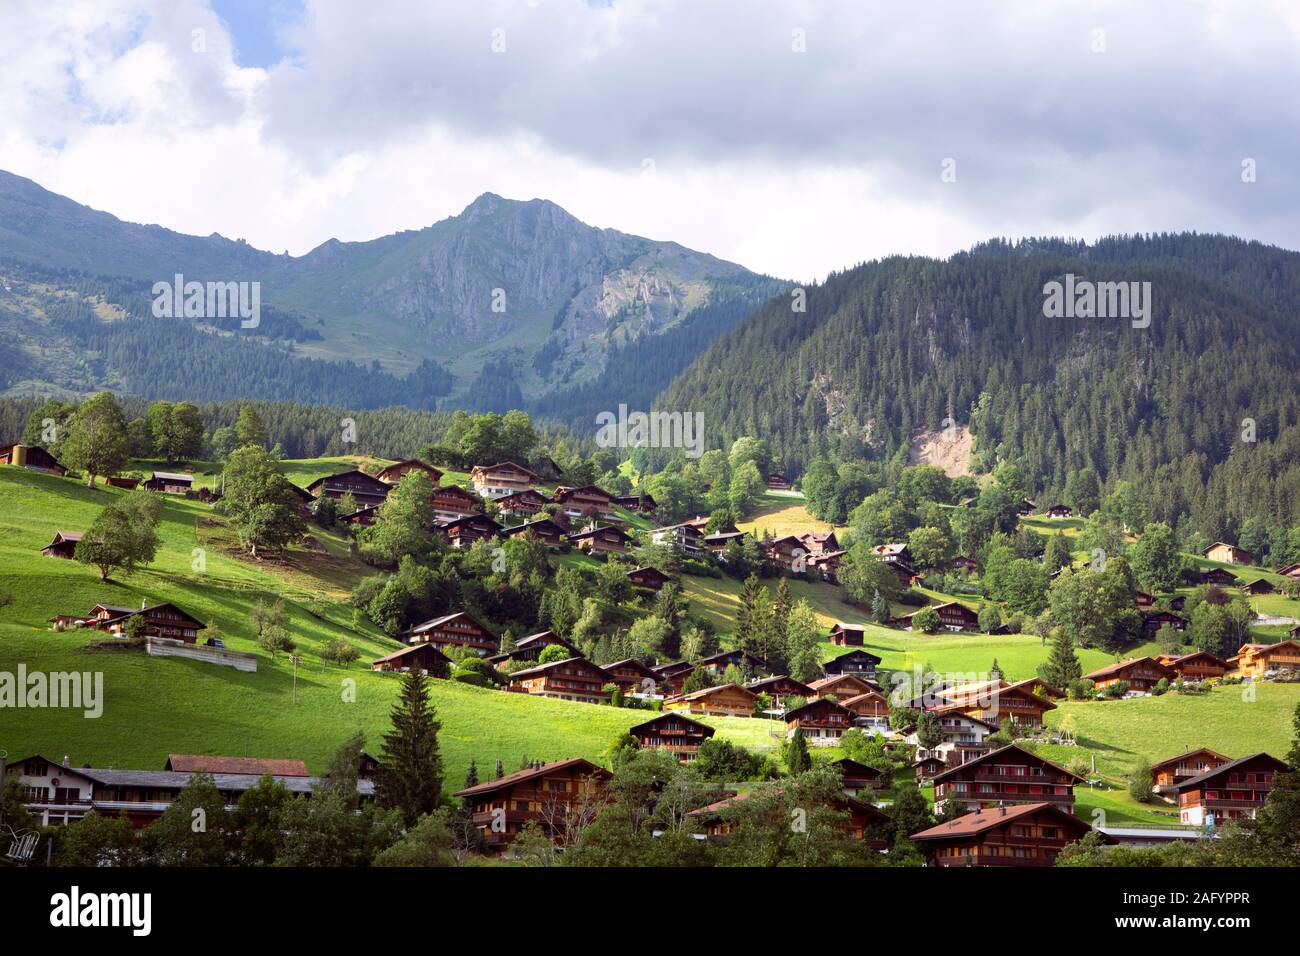 Asentamiento de casas tradicionales suizos en el valle. Campo, verdes prados, paisaje alpino. Cabañas de madera de idilio village. Suiza Foto de stock